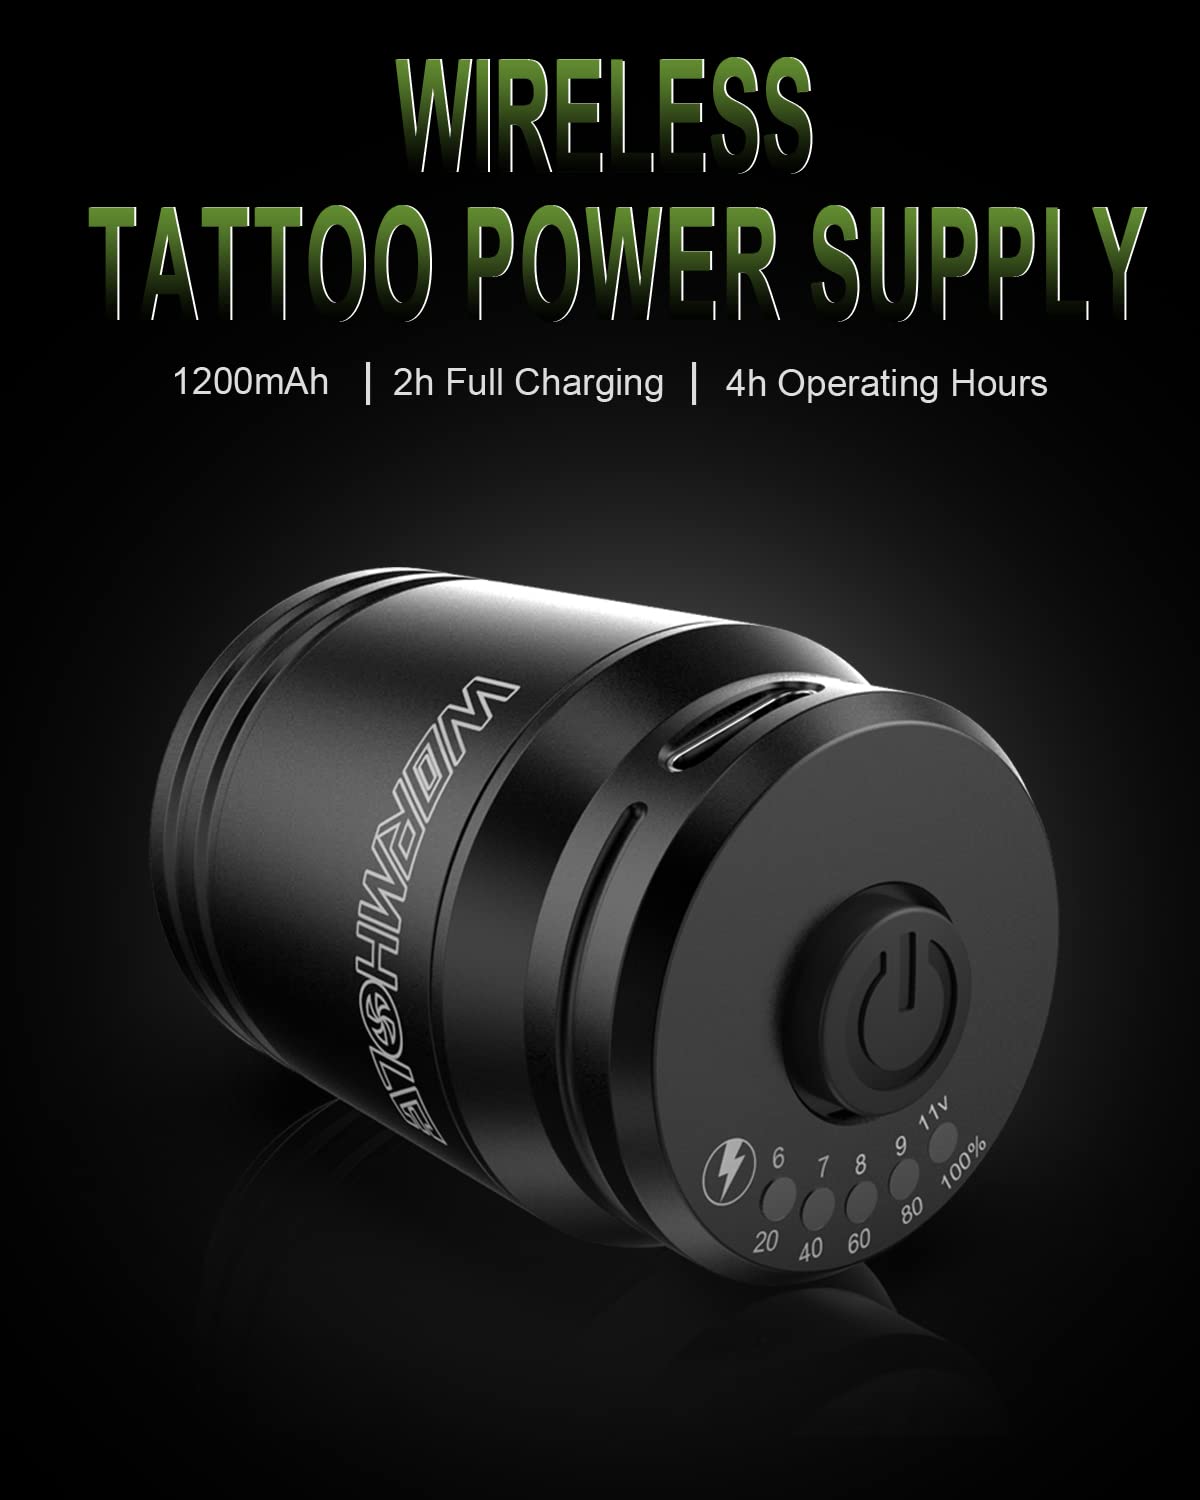 Wireless Tattoo Kit-Wormhole Tattoo Pen, Cordless Tattoo Pen Kit for Beginner, Complete Tattoo Kit with Tattoo Cartridge Needles Tattoo Ink, 1200mAh Tattoo Power Pack